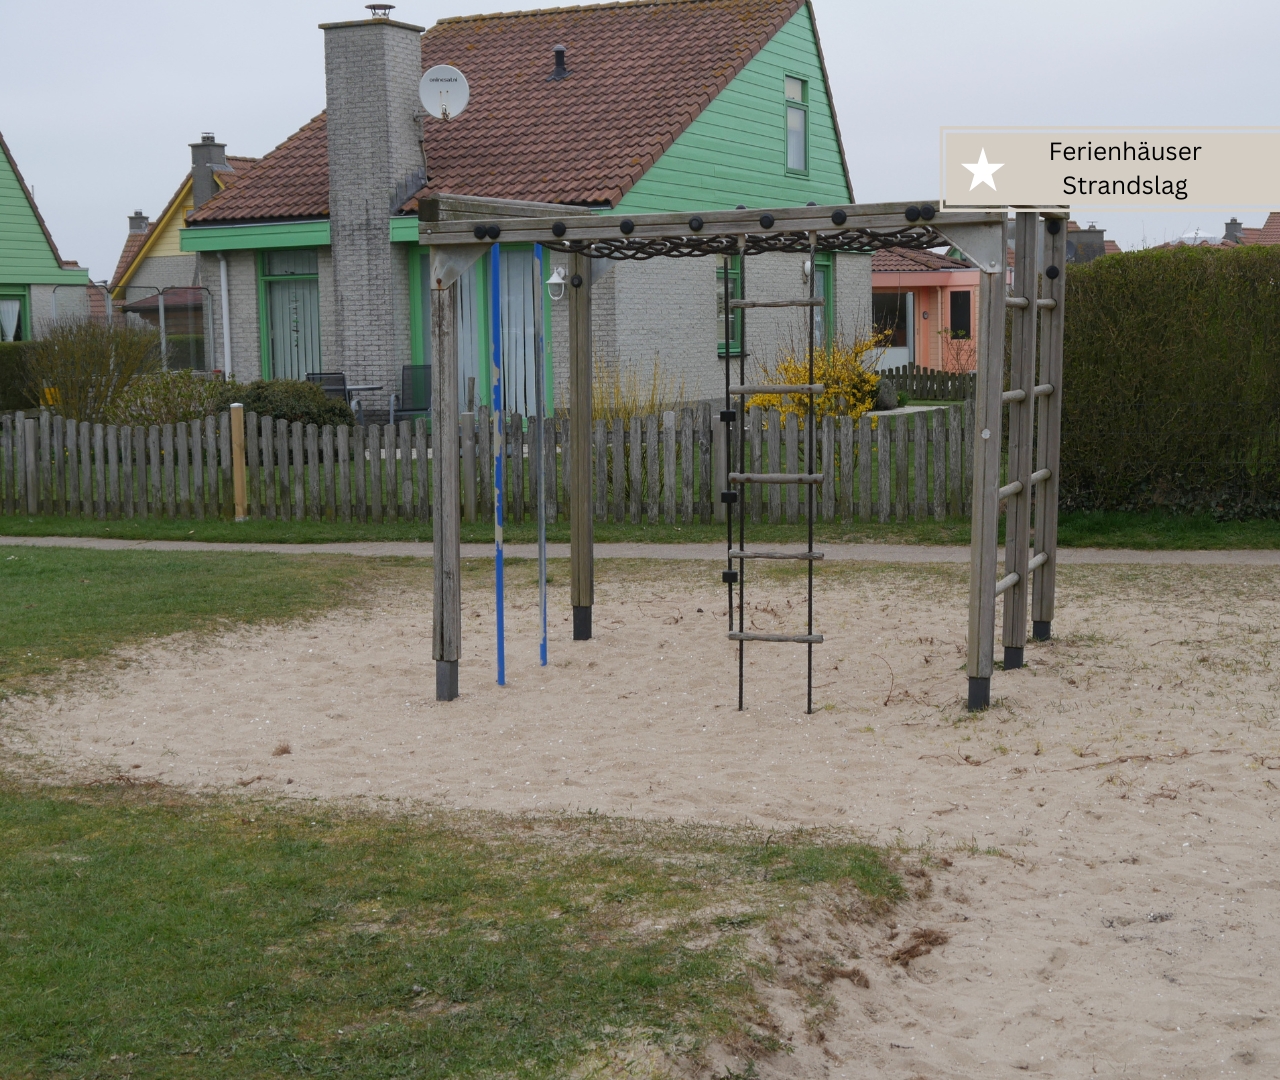 Beste Ferienhäuser in Julianadorp - Strandslag Ferienhaus am Spielplatz